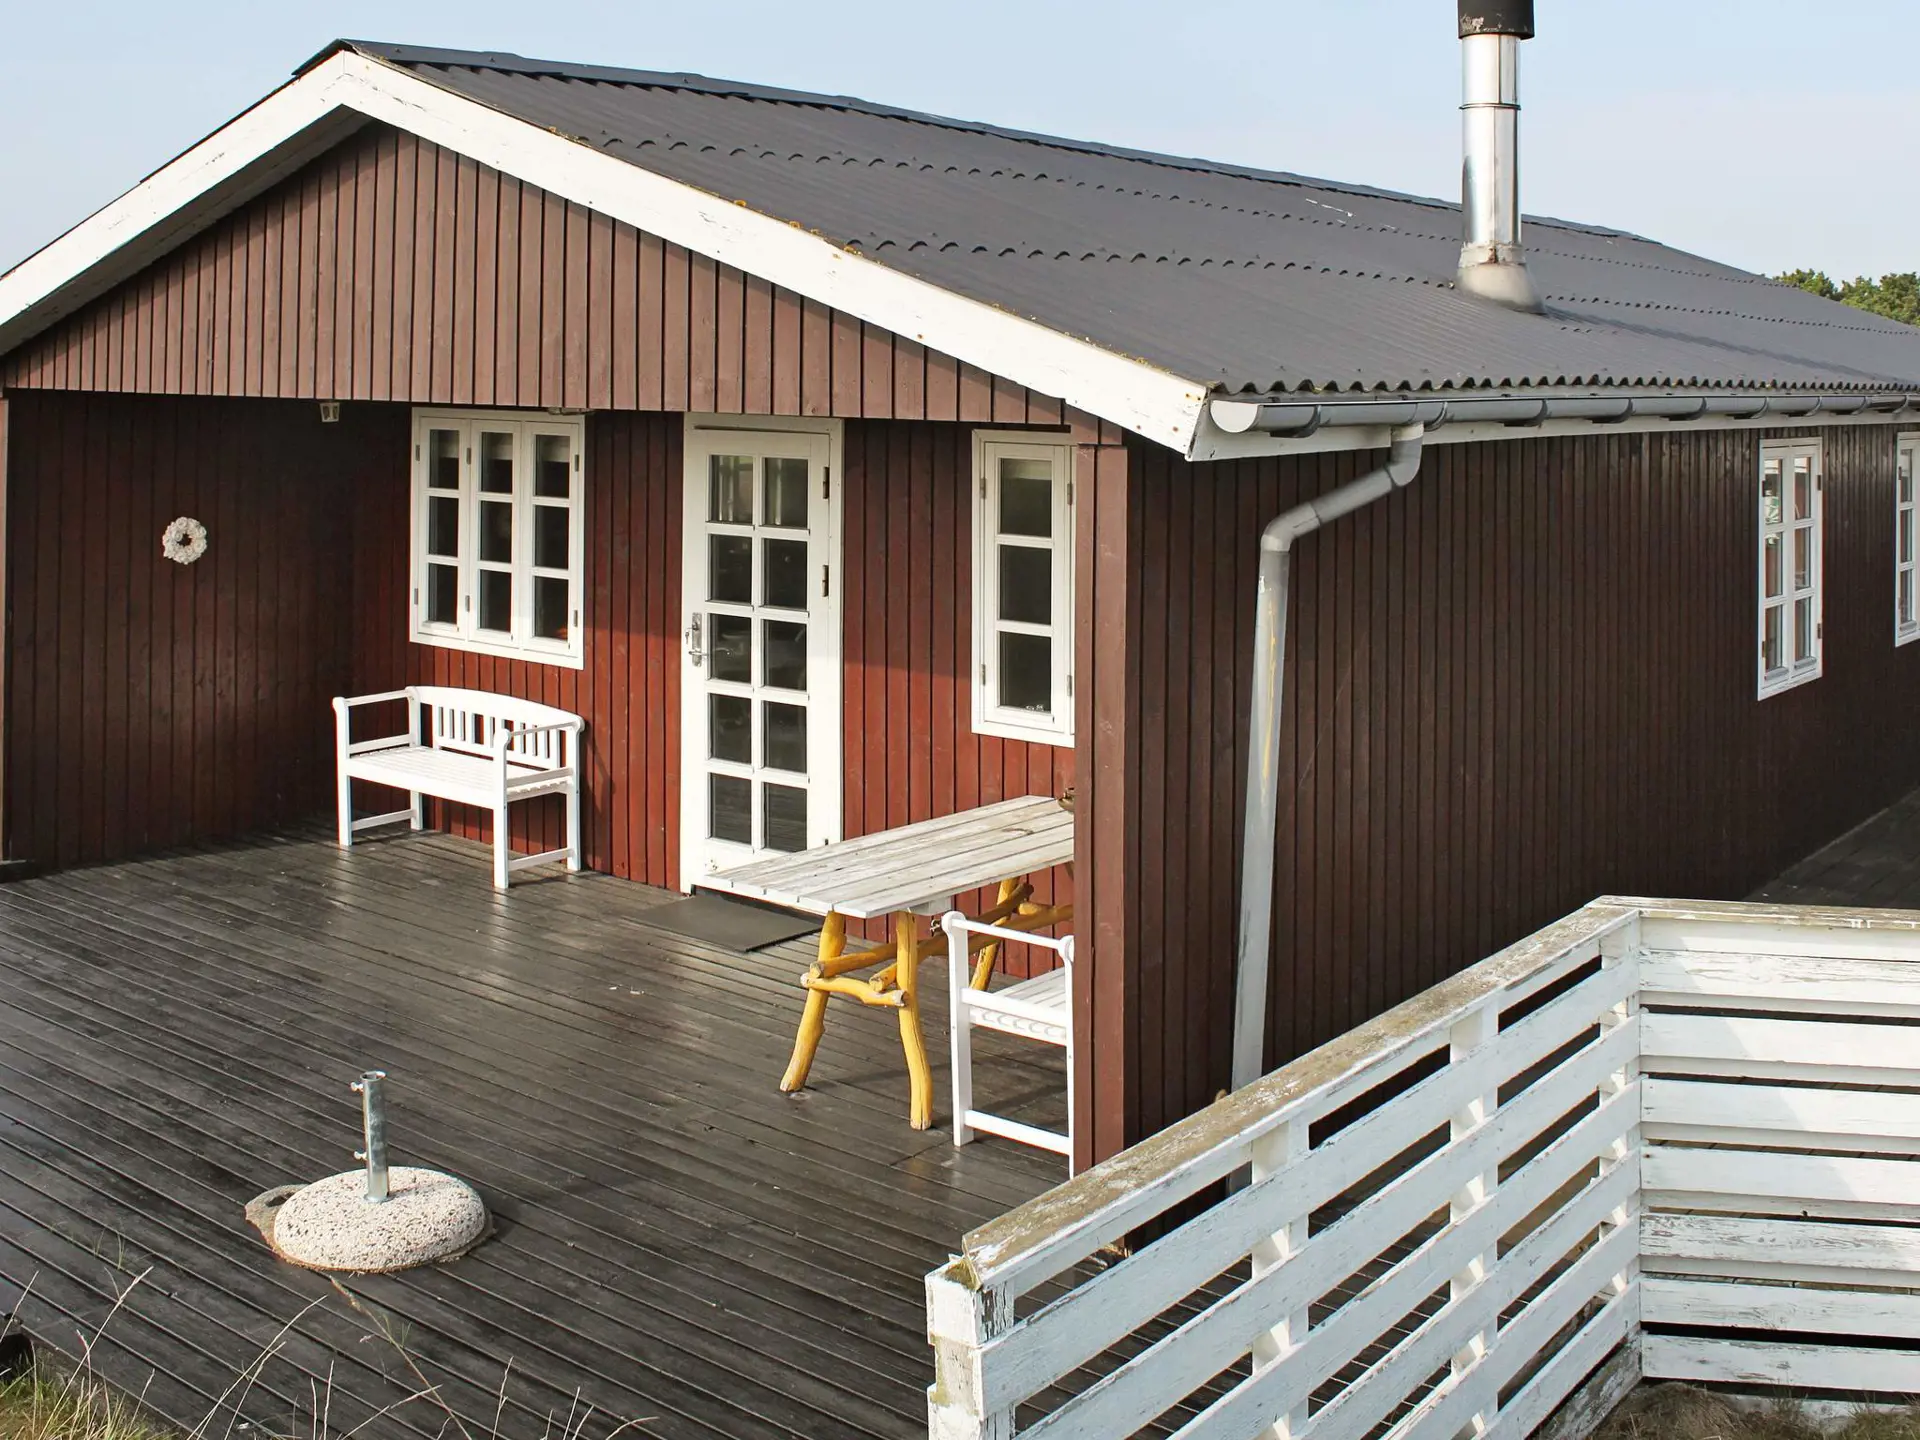 Ferienhaus 95730 in Rindby / Fanø